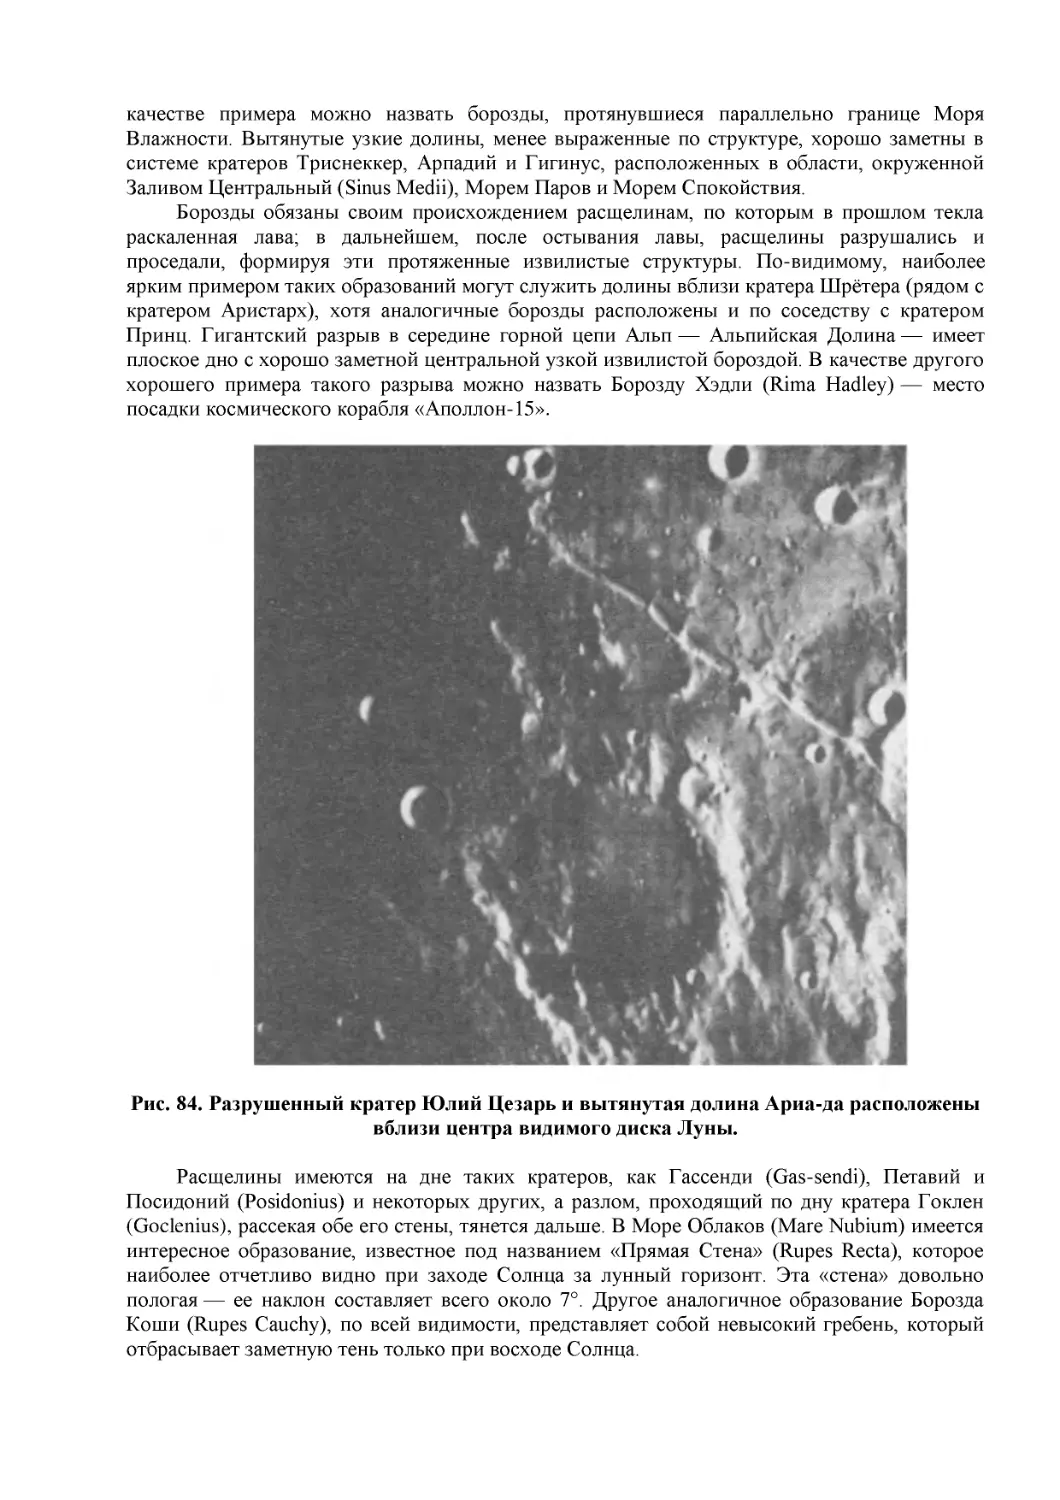 Рис. 84. Разрушенный кратер Юлий Цезарь и вытянутая долина Ариа-да расположены вблизи центра видимого диска Луны.